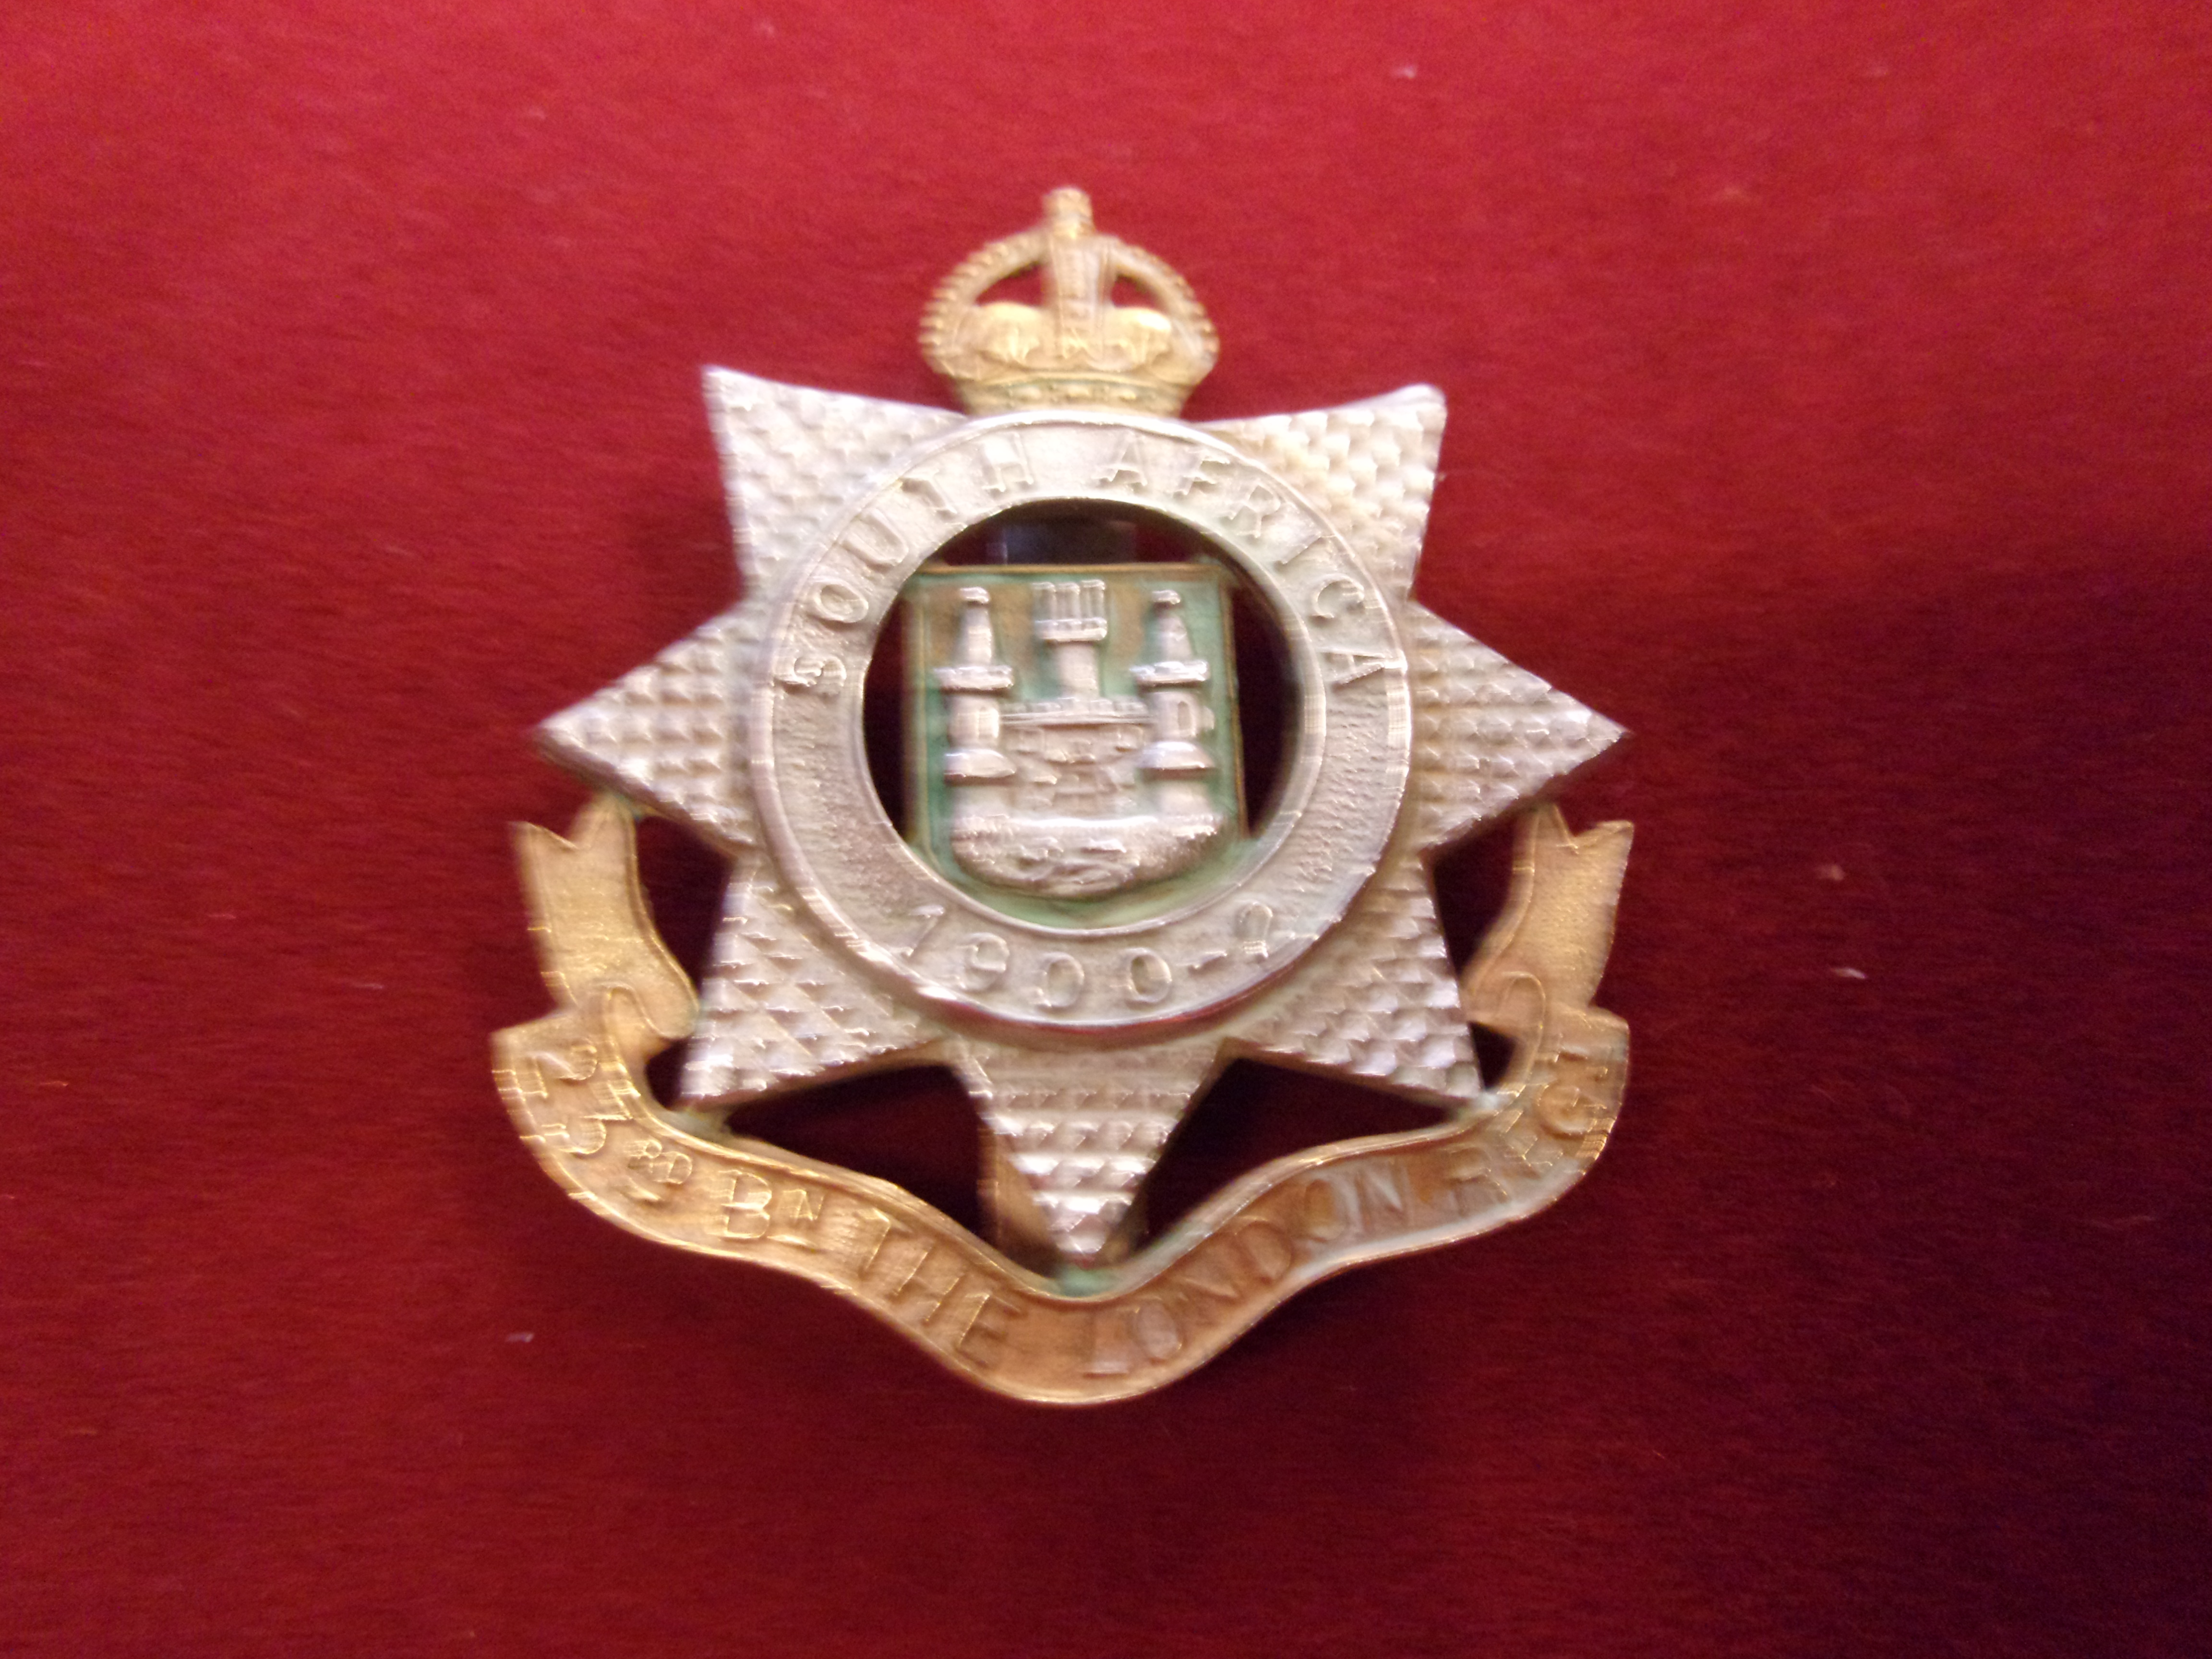 23rd London Regiment Cap Badge (Bi-metal), slider. K&K: 1855